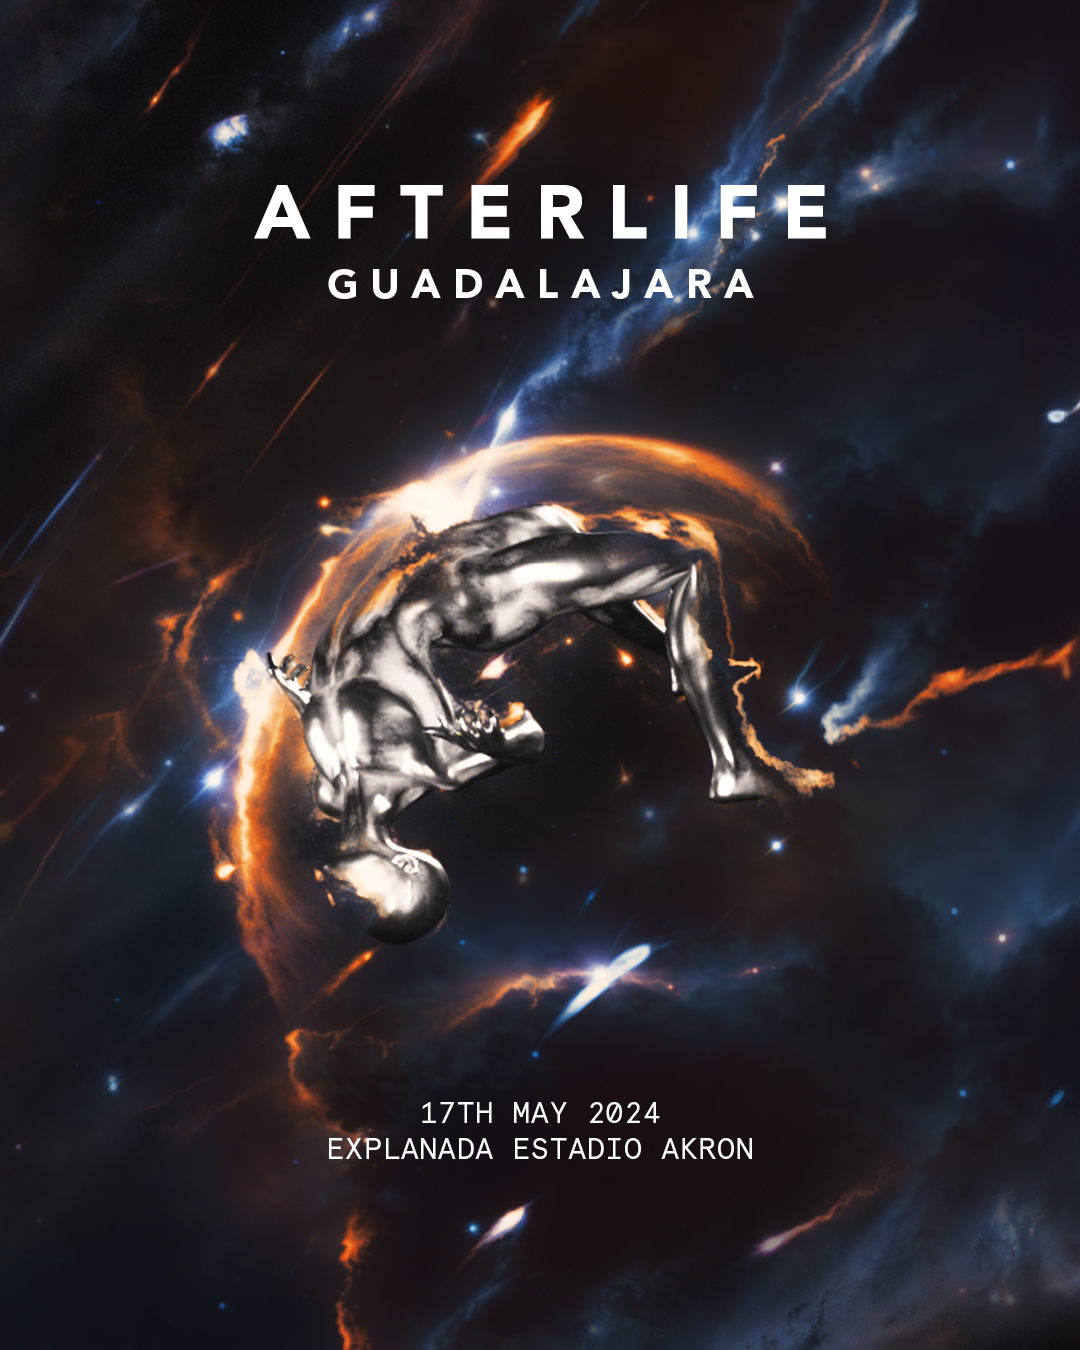 Afterlife Guadalajara 2024 at TBA - Explanada Estadio Akron